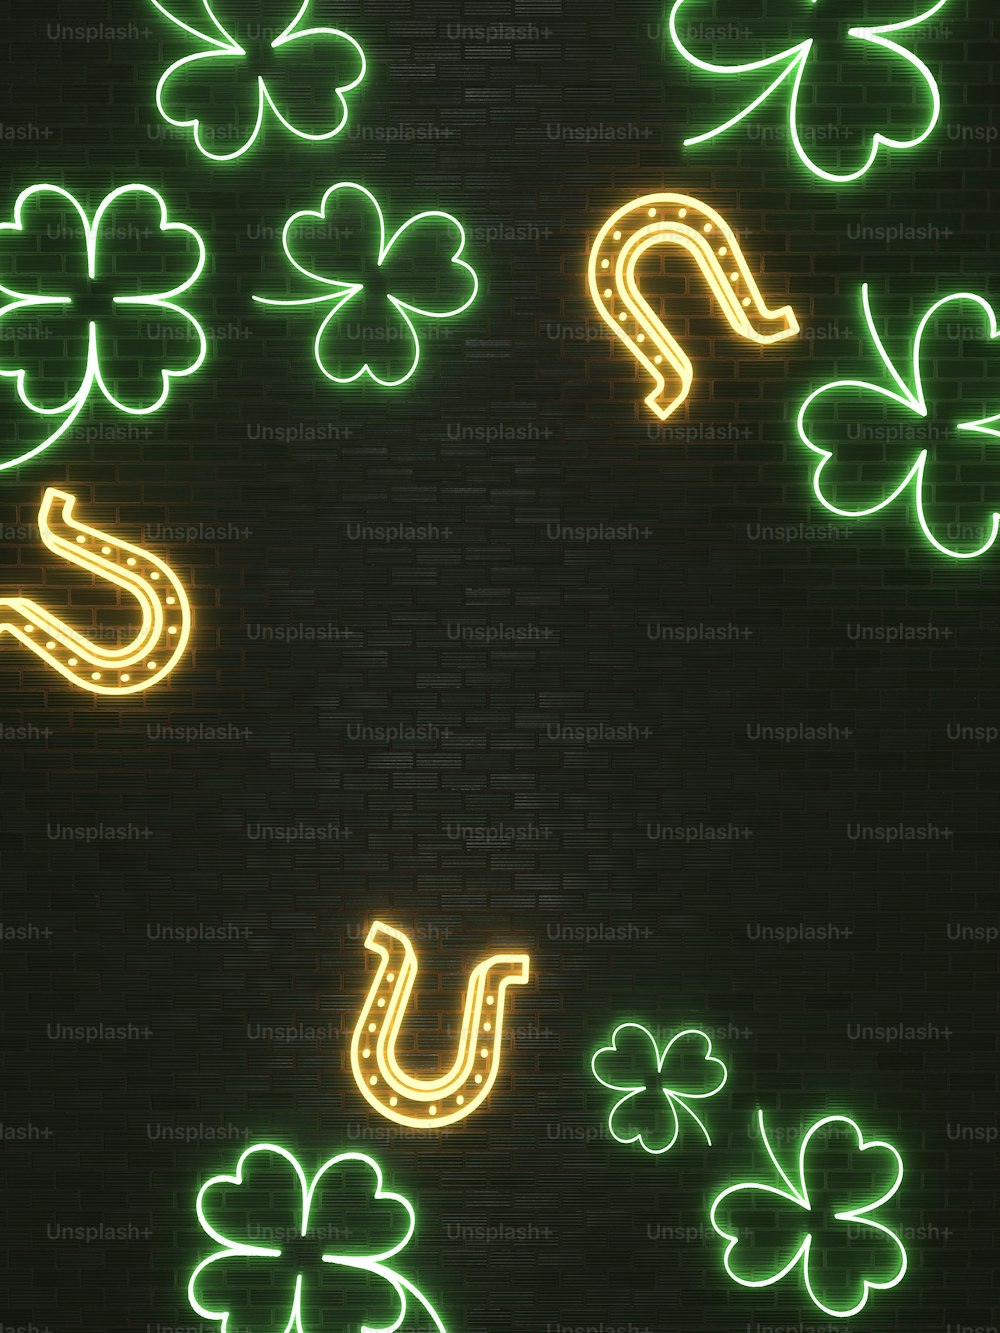 eine grün-gelbe Leuchtreklame an einer Ziegelmauer